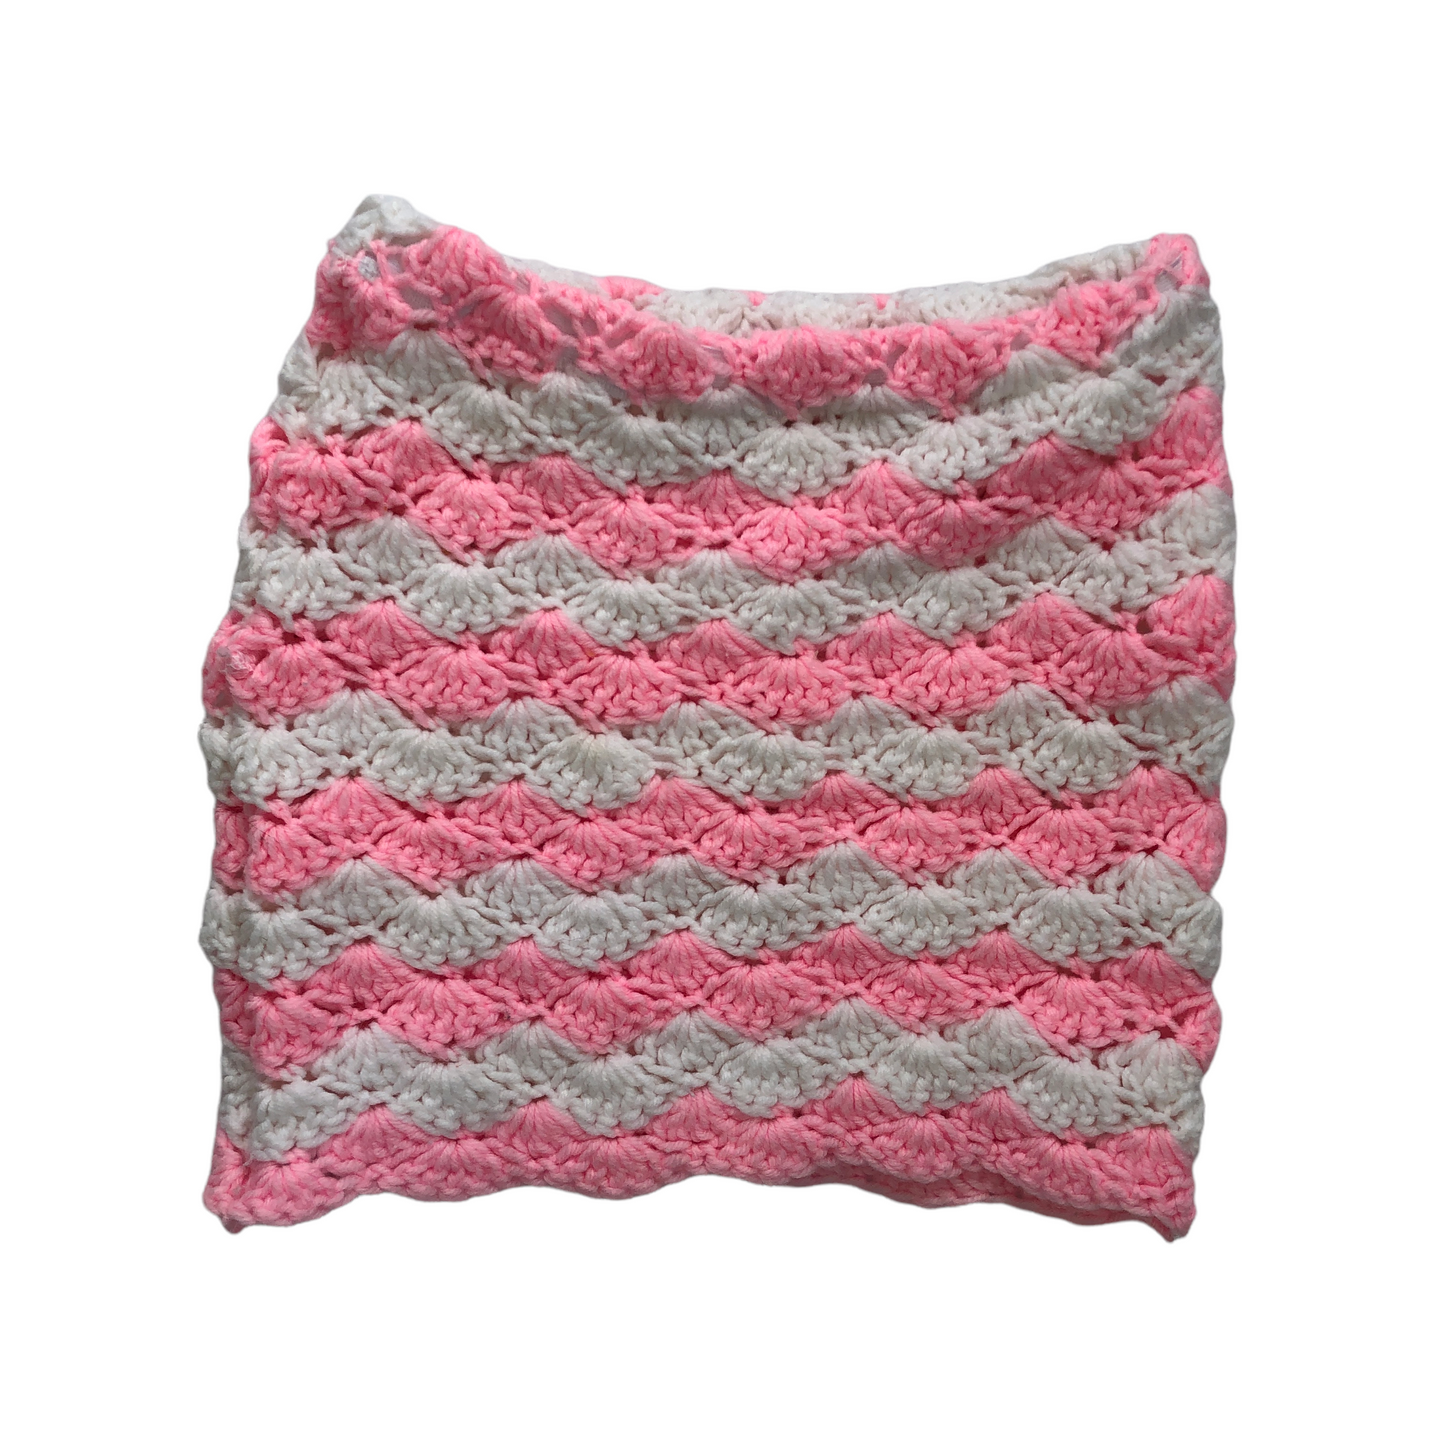 Vintage Reworked Crochet 2 Piece (Pink/White)